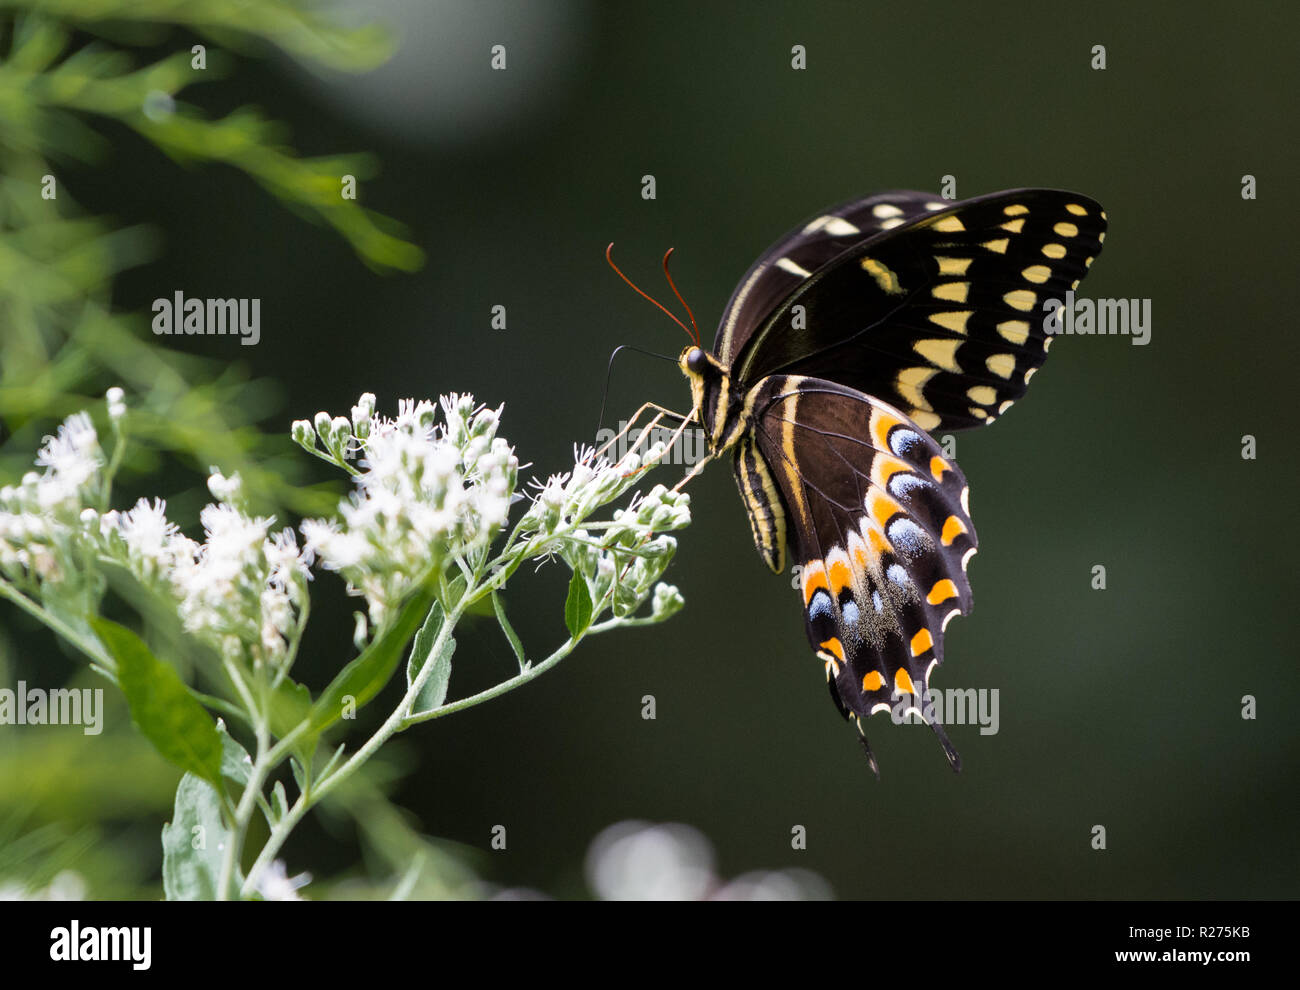 A Black Swallowtail Butterfly (Papilio polyxenes) se nourrissant de fleurs blanches. Houston, Texas, USA. Banque D'Images